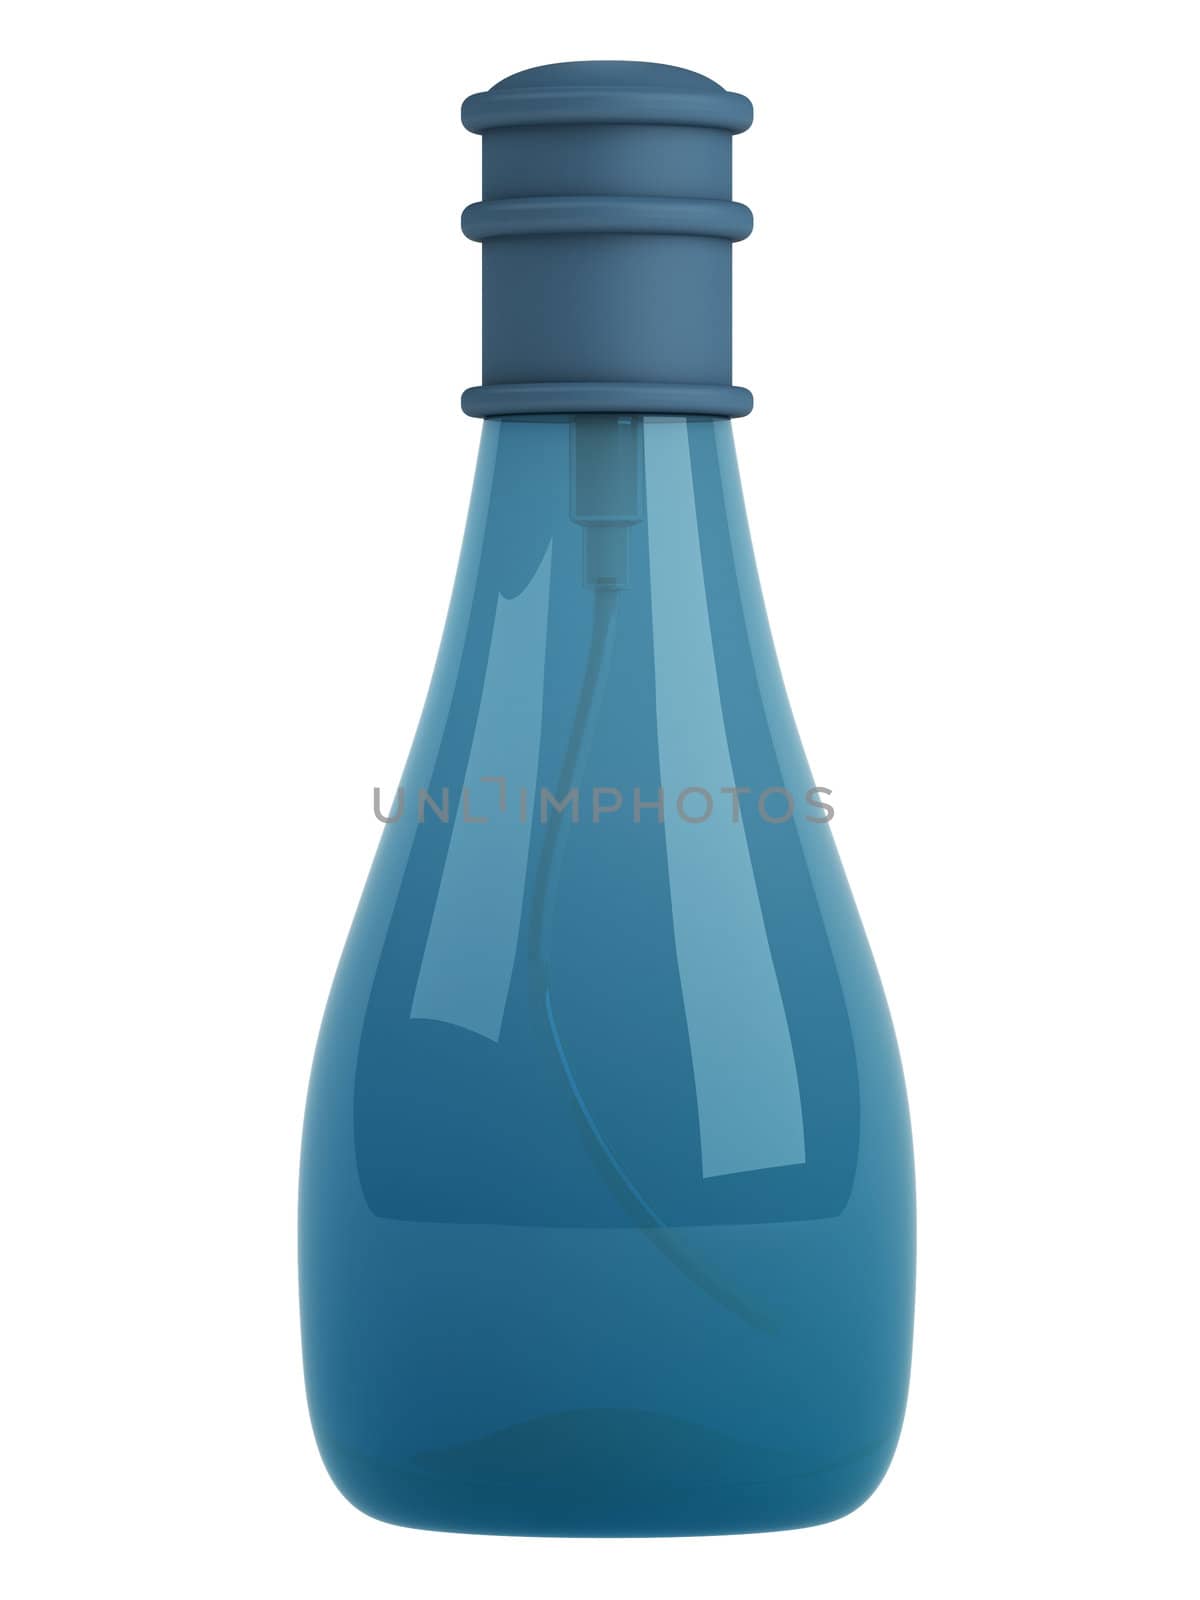 Blue bottle parfume isolated on white background